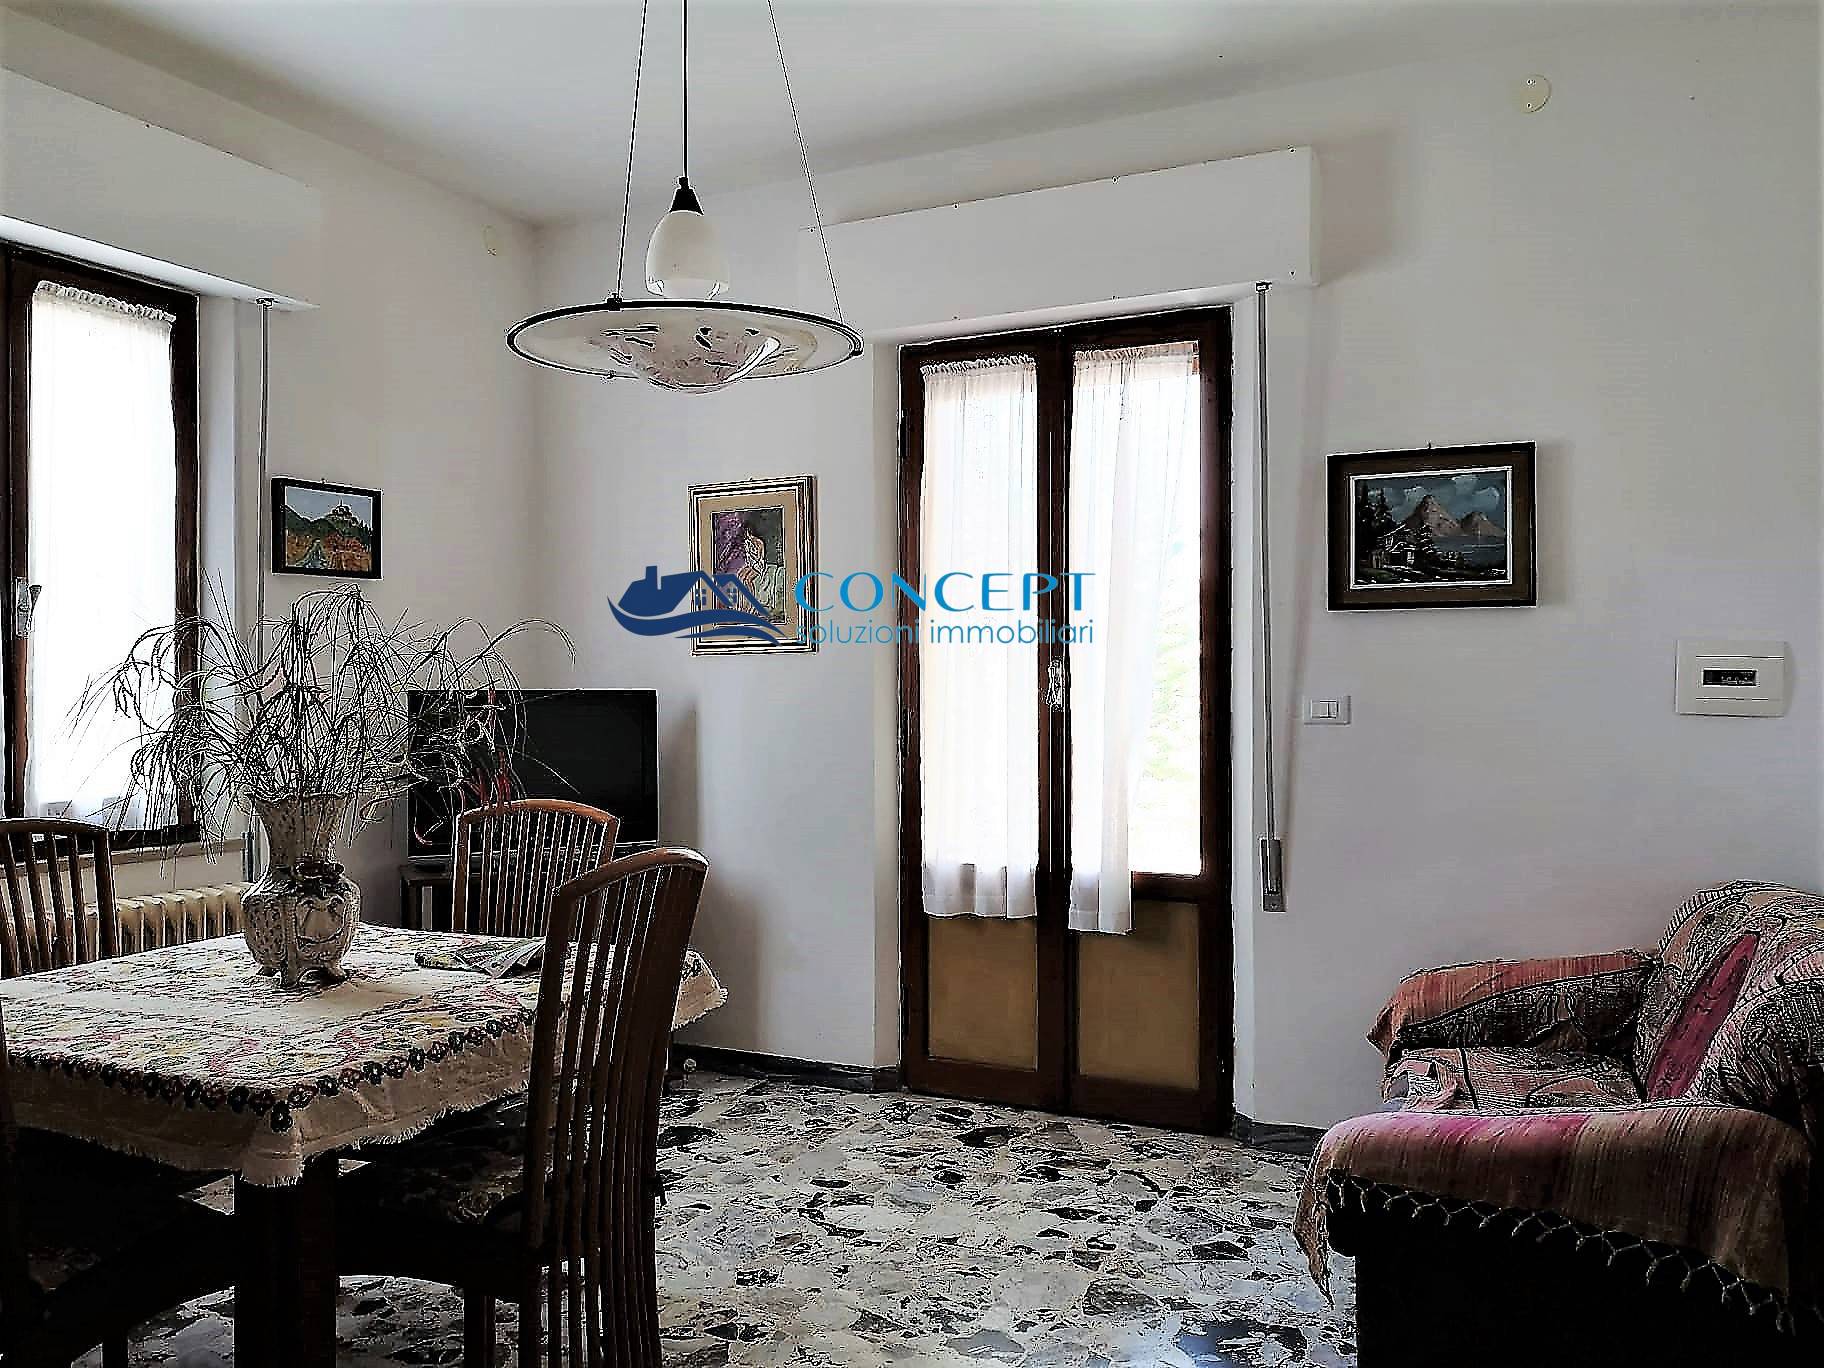 Appartamento in vendita a Martinsicuro, 5 locali, prezzo € 140.000 | PortaleAgenzieImmobiliari.it